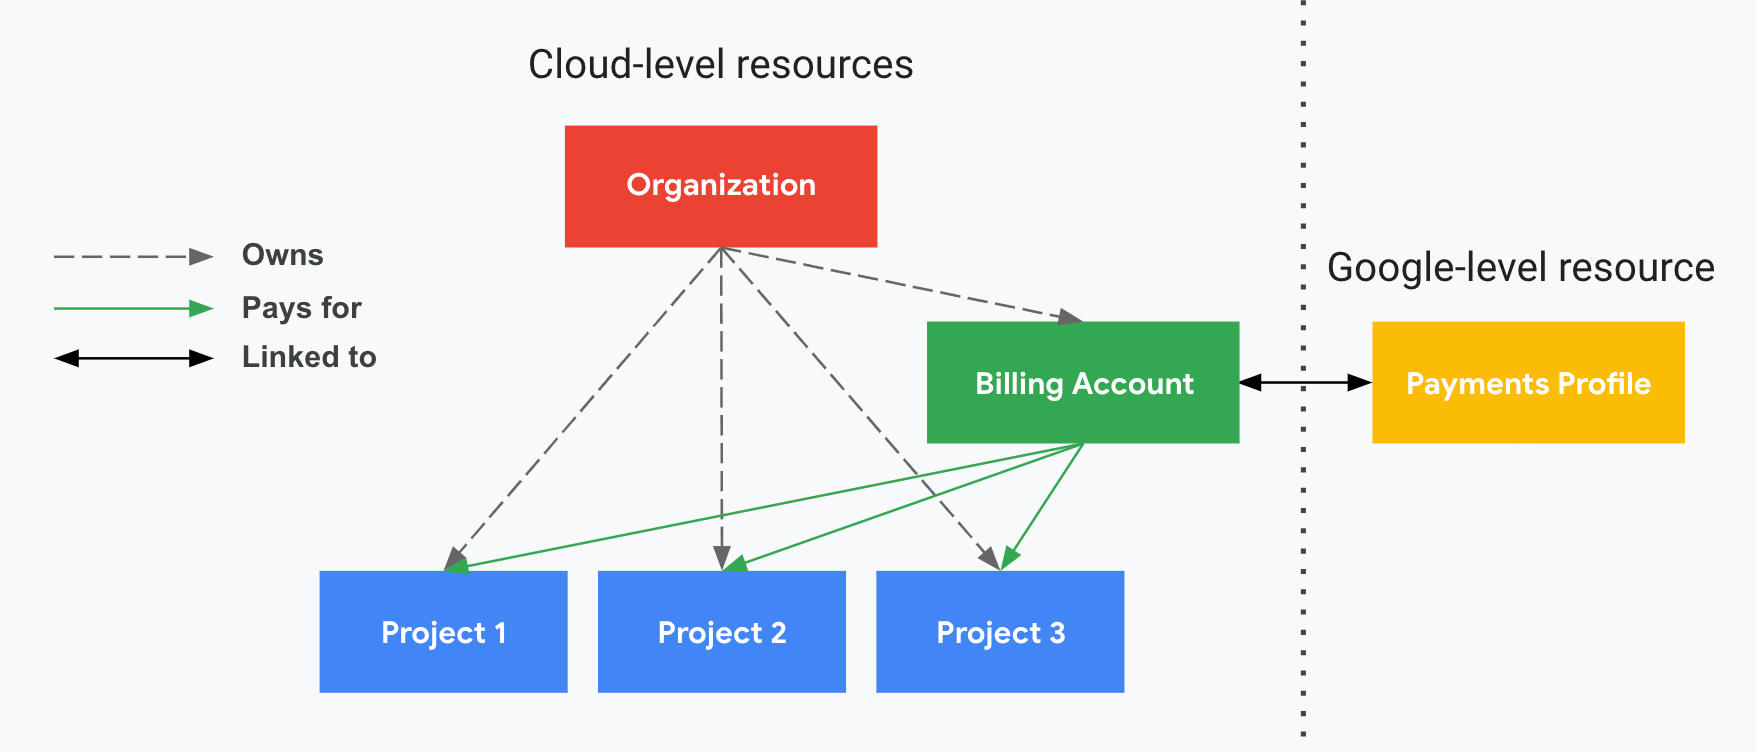 プロジェクトが Cloud 請求先アカウントや Google お支払いプロファイルとどのように関連しているかを示します。縦の破線で区切られた一方には Google Cloud レベルのリソース（Cloud 請求先アカウントと関連付けられたプロジェクト）が示され、もう一方には Google レベルのリソース（Google お支払いプロファイル）が示されています。プロジェクトの費用は、Google お支払いプロファイルにリンクされている Cloud 請求先アカウントに請求されます。